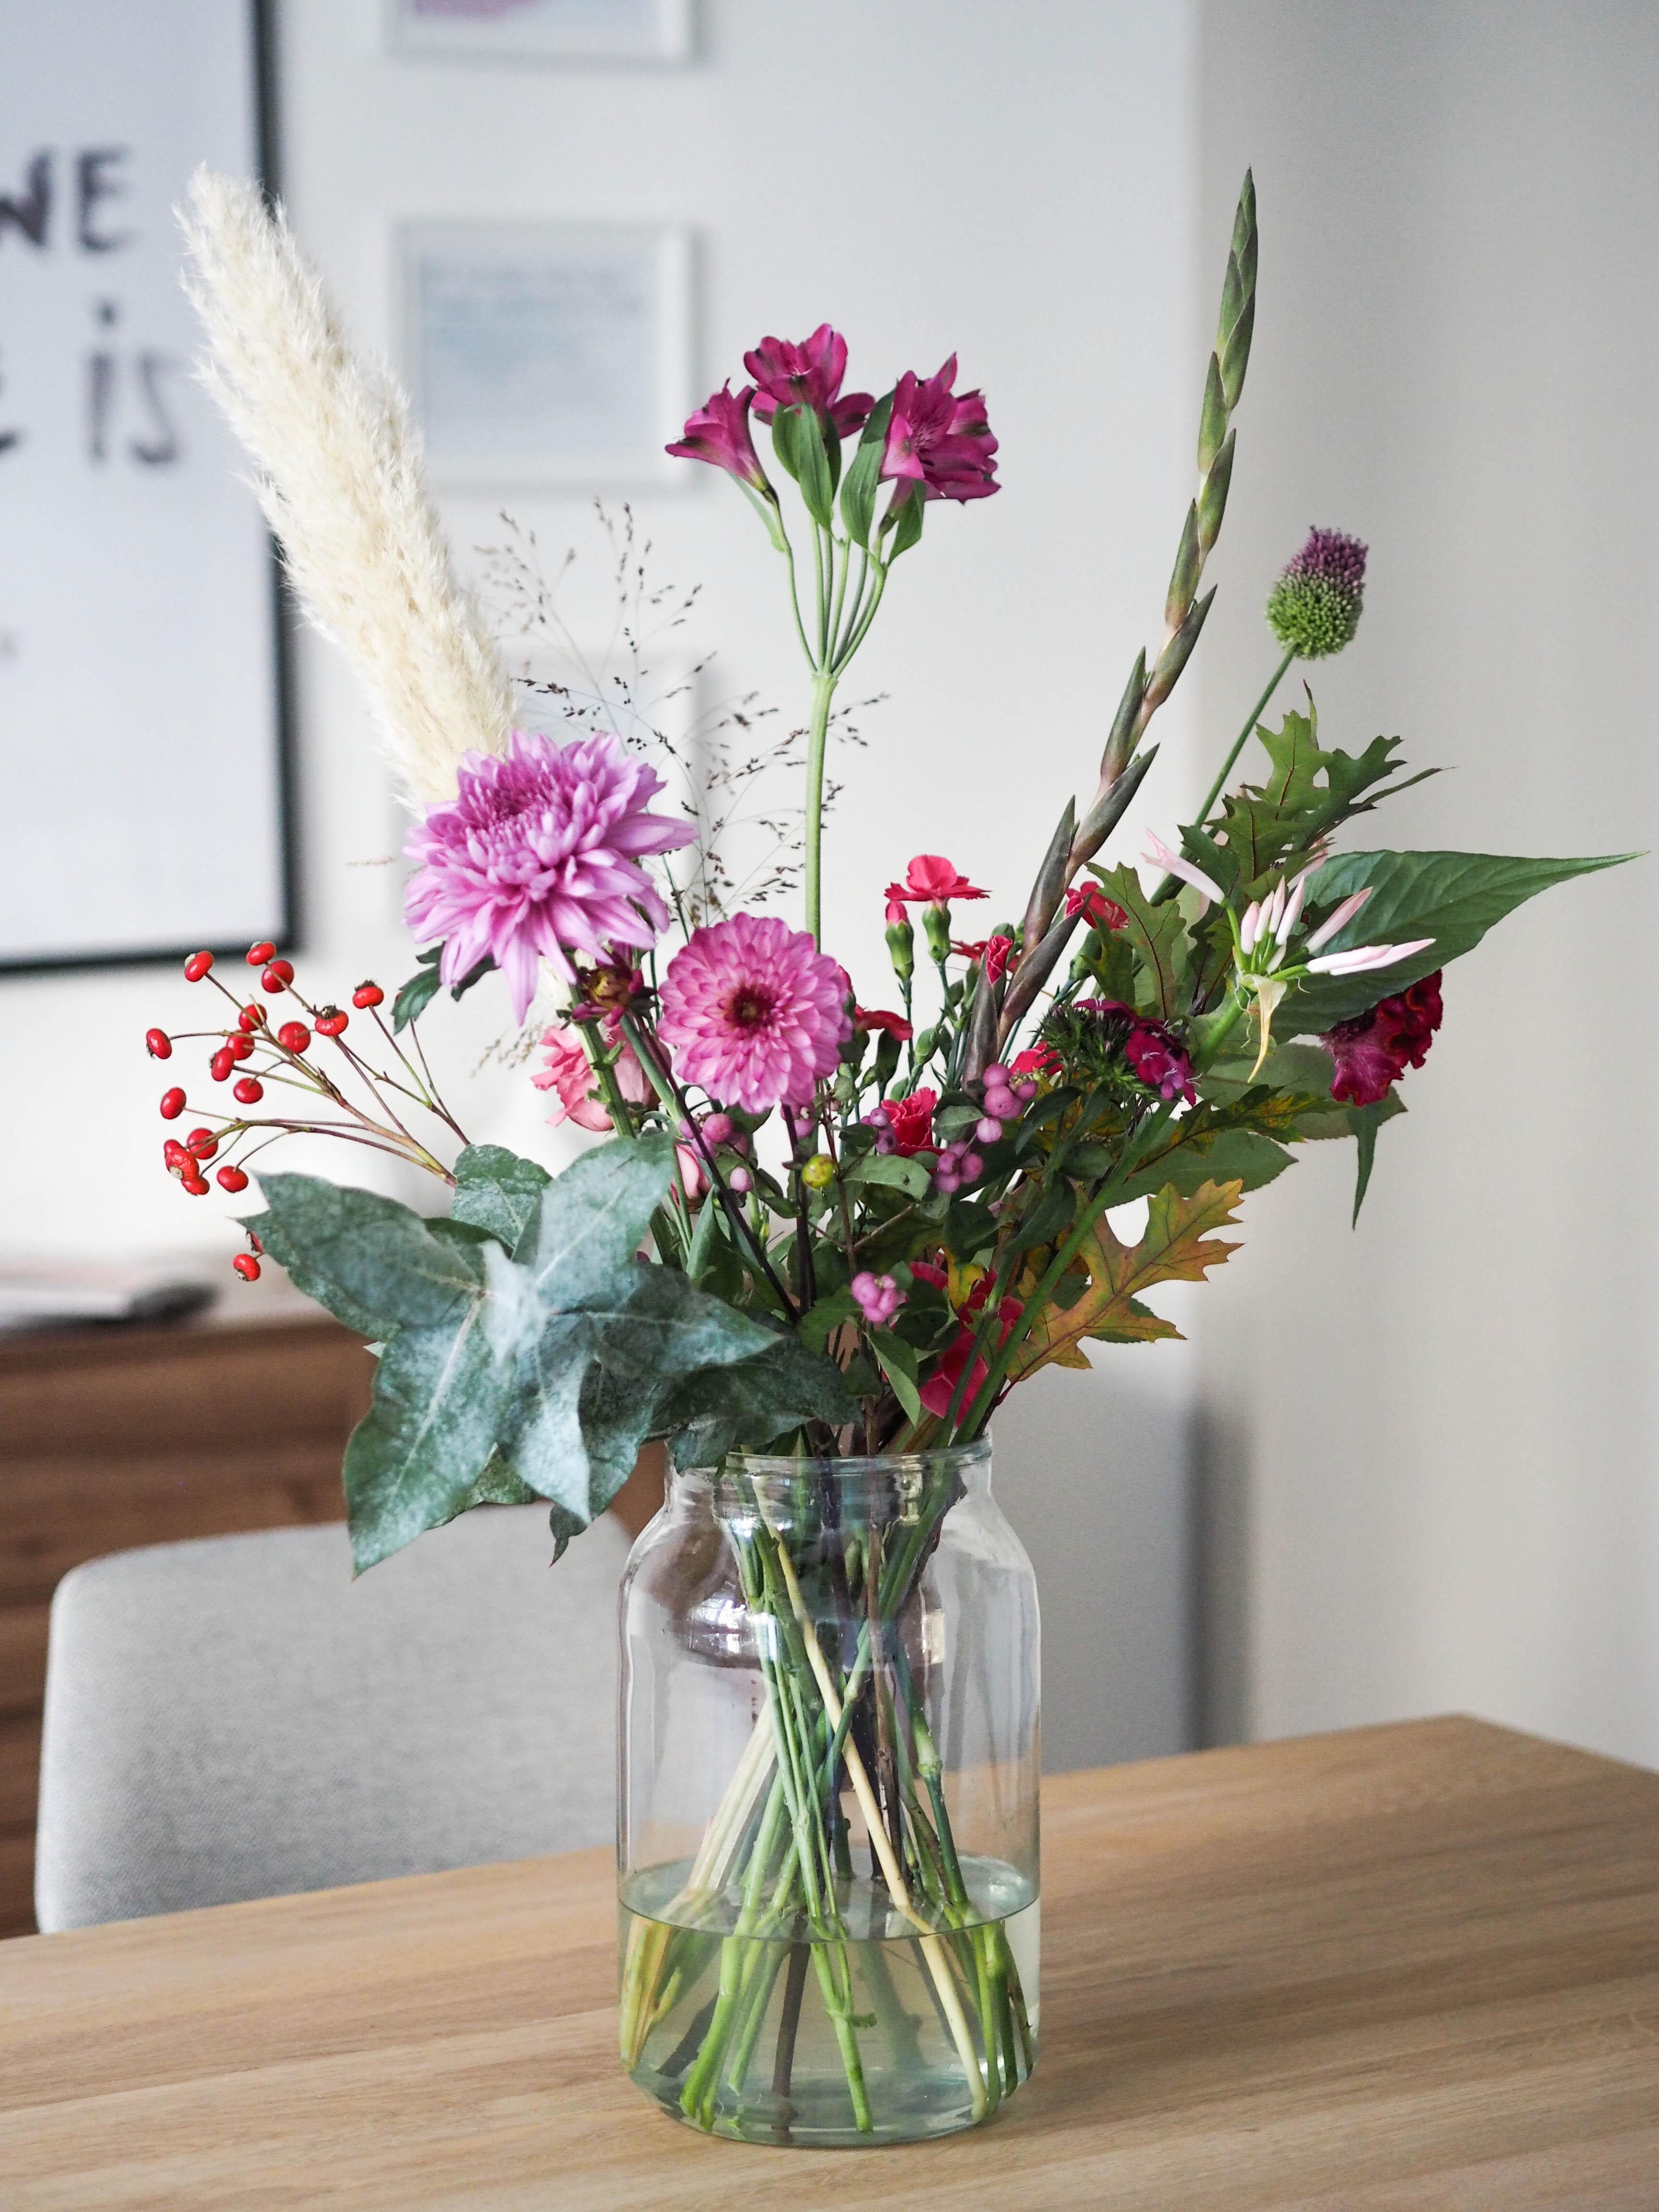 Wir feiern den #freshflowerfriday heute mit diesem tollen Bouquet von #bloomon. Feiert ihr mit?
#blumen #blumenstrauss